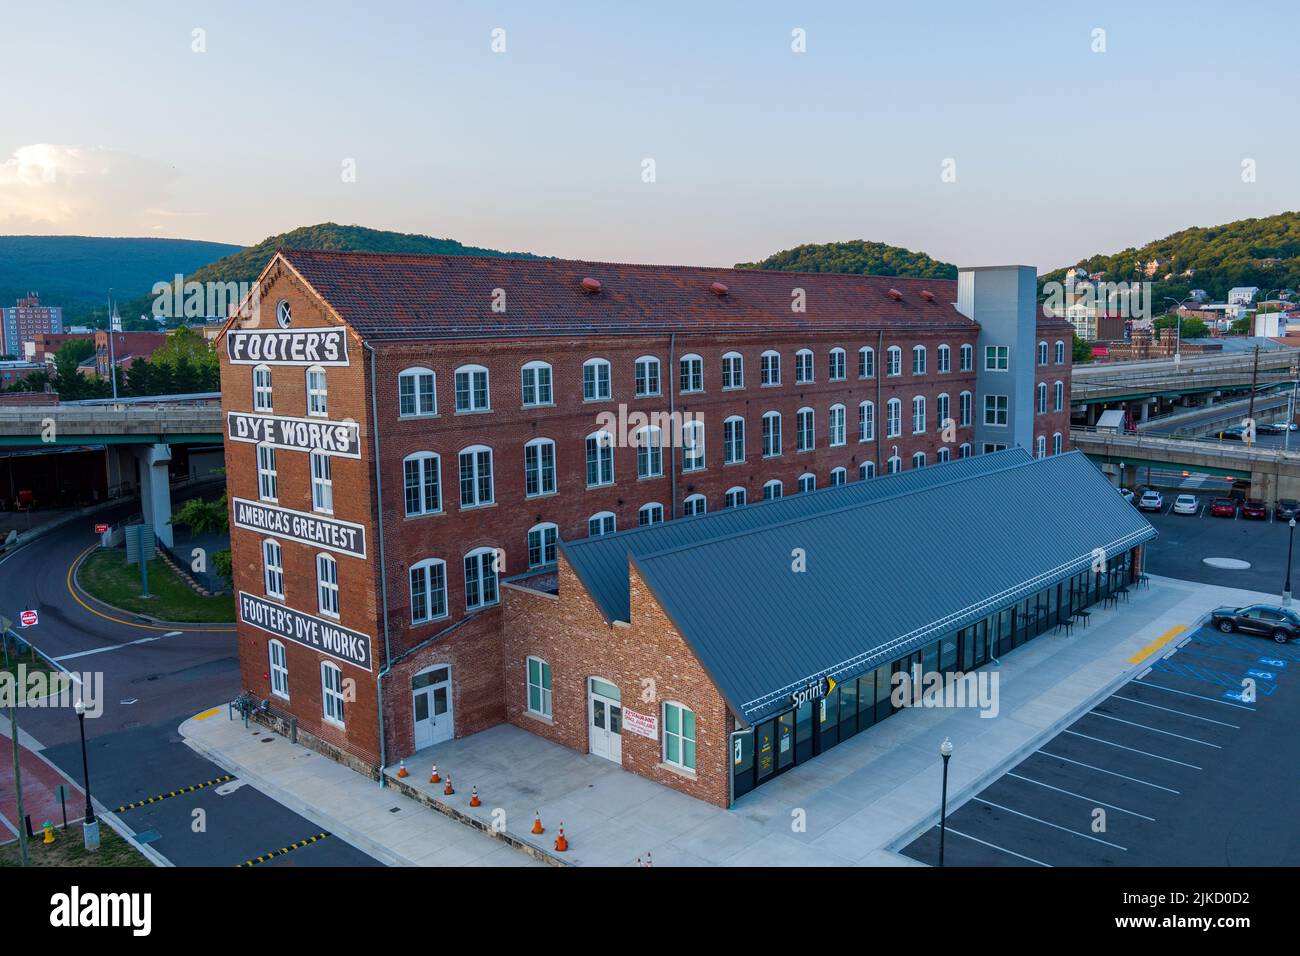 Foto aerea dello storico edificio Footer's Dye Works a Cumberland, Allegany County, Maryland. L'edificio è stato costruito nel 1906. Foto Stock